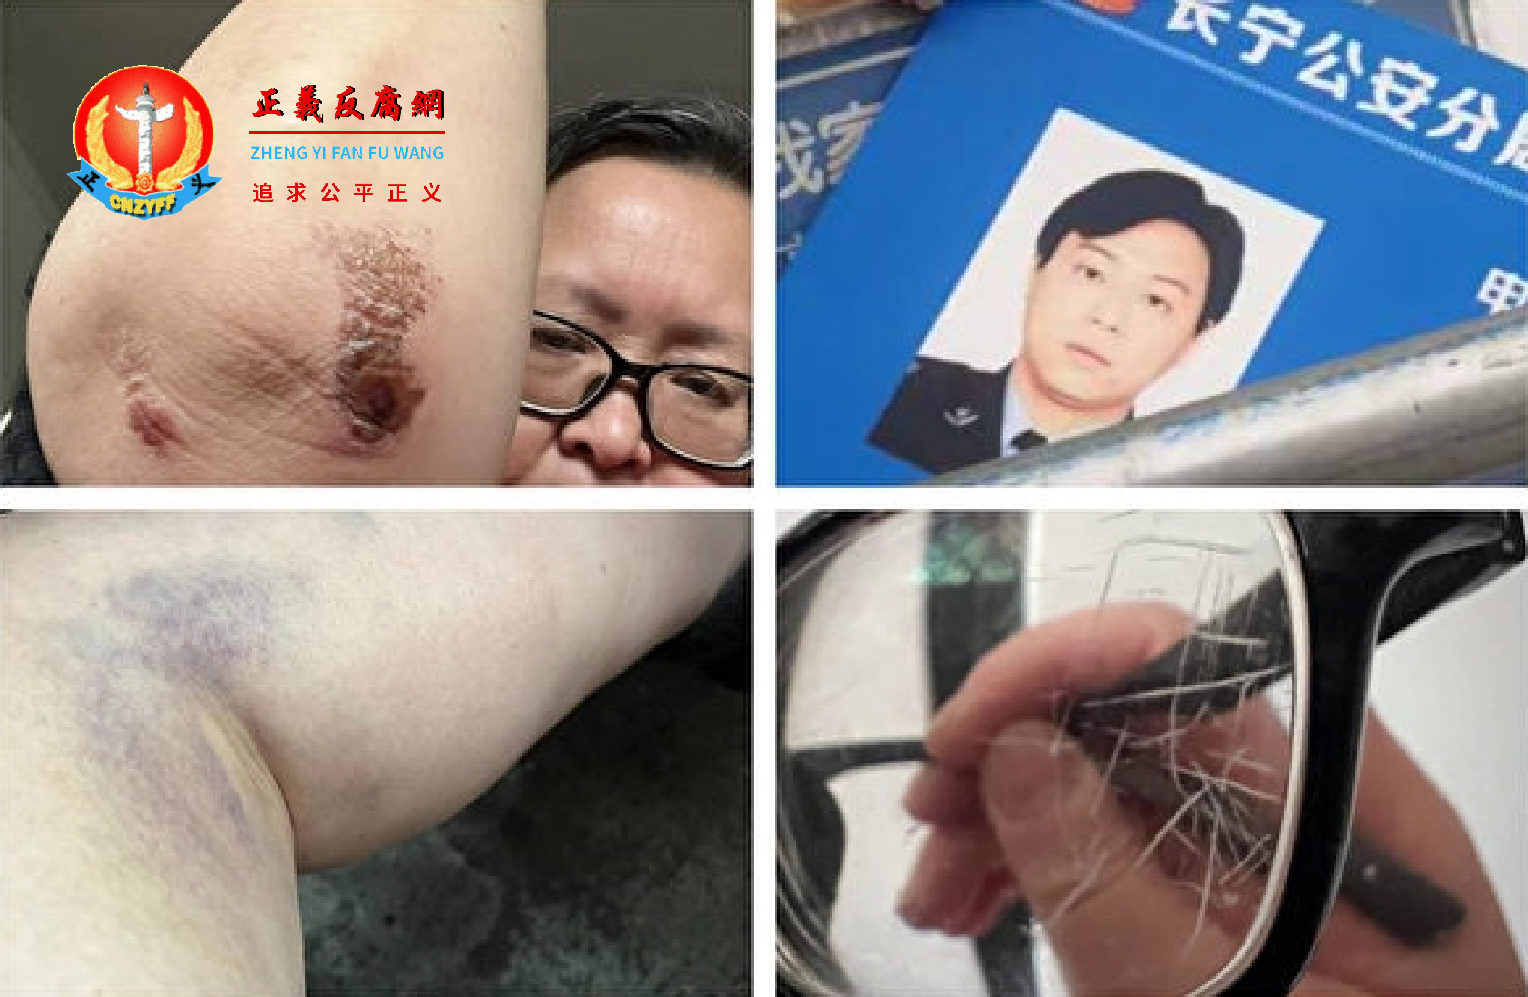 上海长宁区大金更小区61岁的周女士4月9日做核酸检测时被捅破咽喉部导致咽喉流血不止。她外出寻医时在小区内被警察殴打。.png